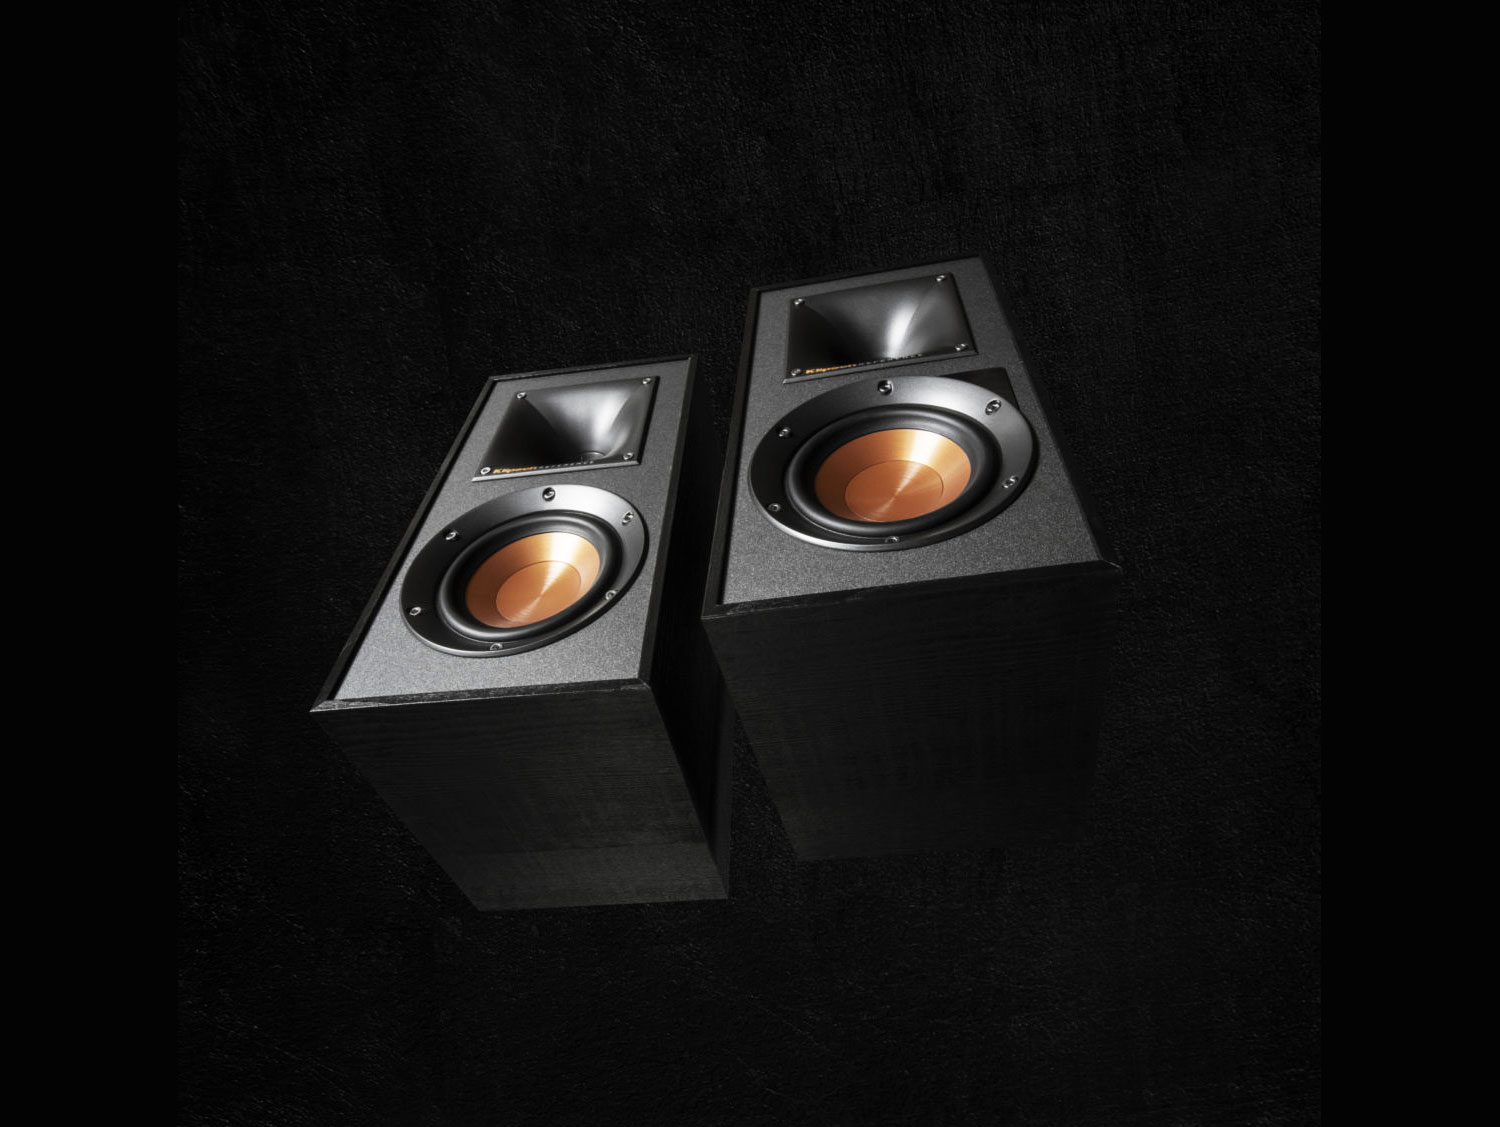 R-51PM (Black)
(Power Speaker)